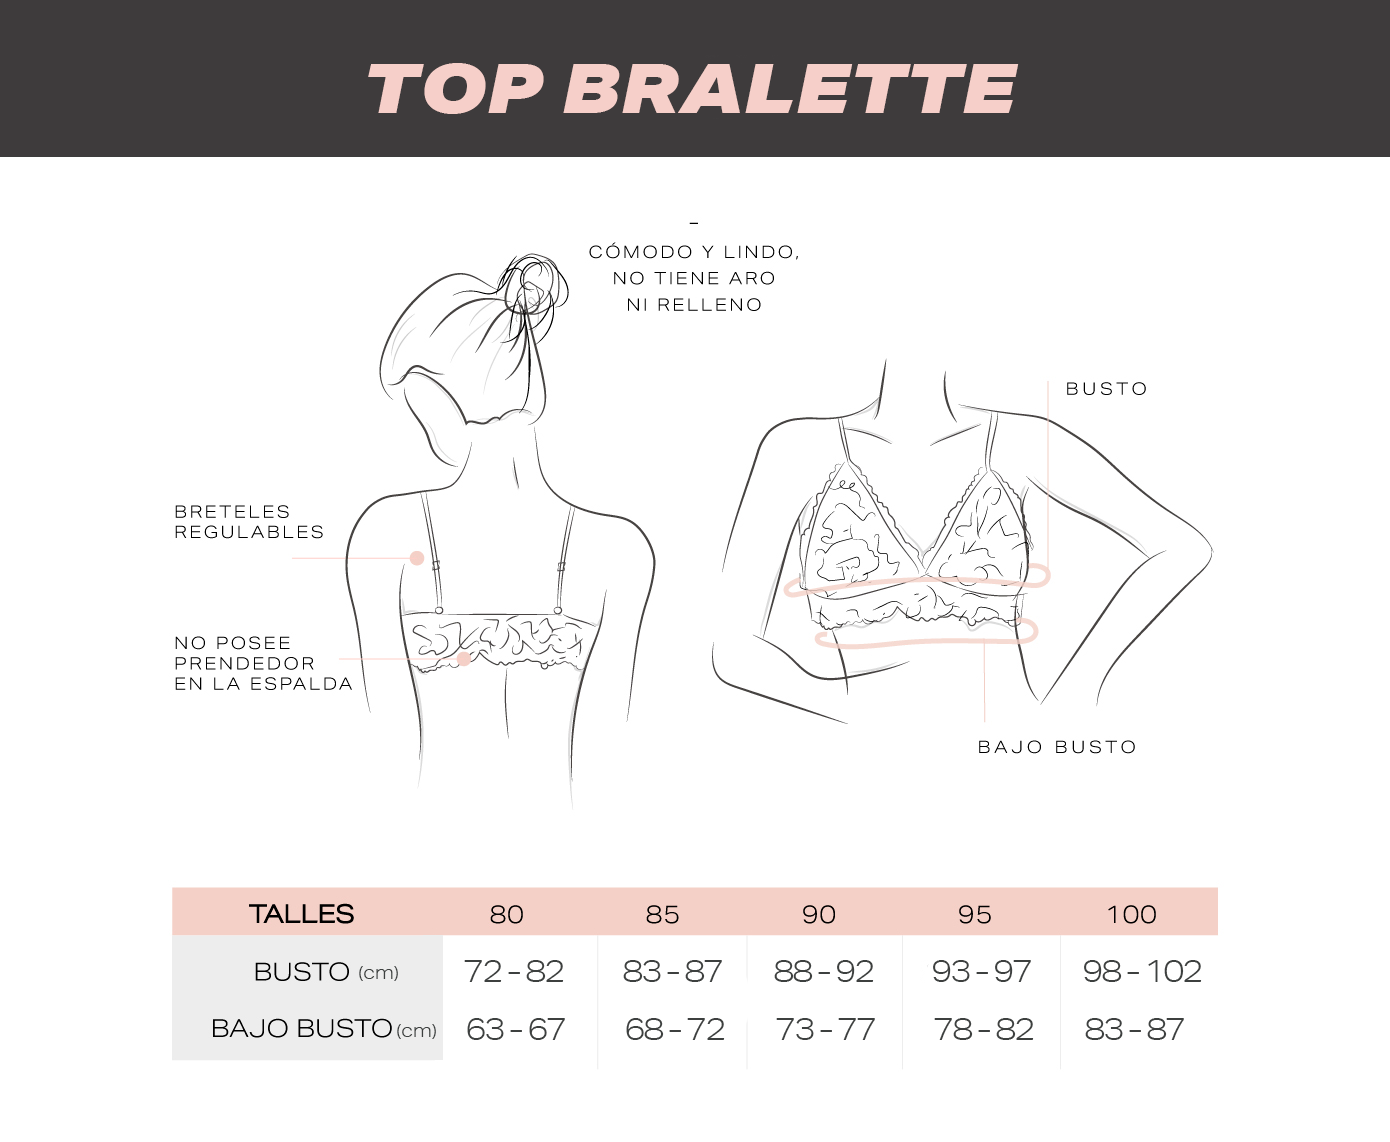 Guía de talles Corpiños Top Bralette